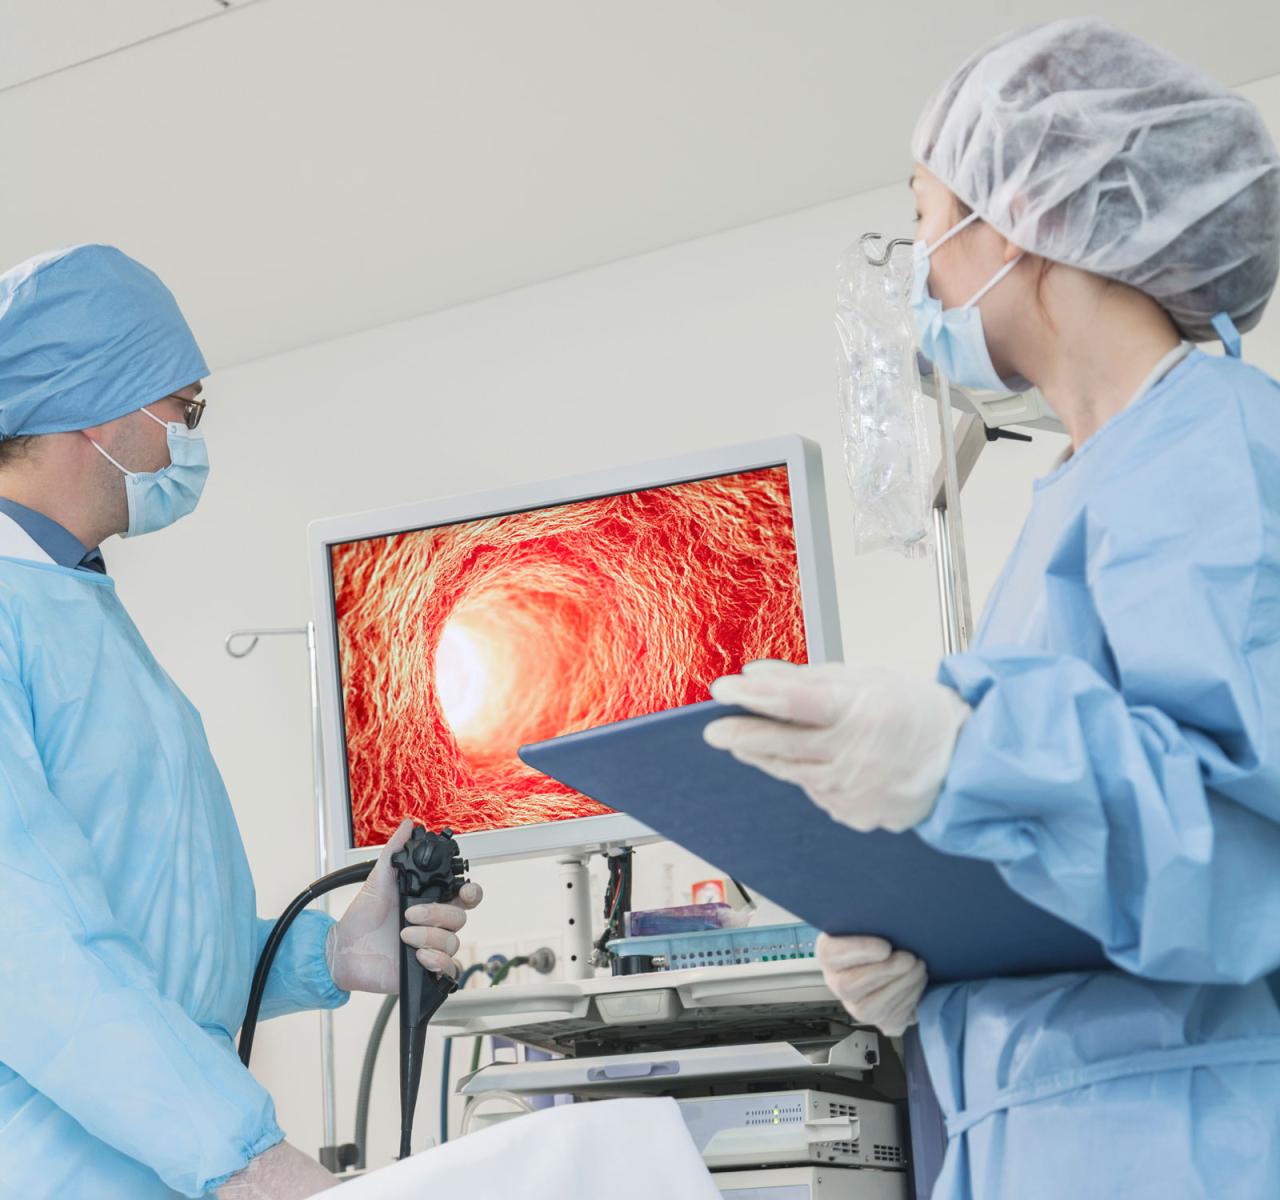 L'éclairage DEL est utilisé en endoscopie, un acte médical minimalement effractif utilisé pour voir l'intérieur du corps ou en obtenir une image à des fins chirurgicales ou diagnostiques.